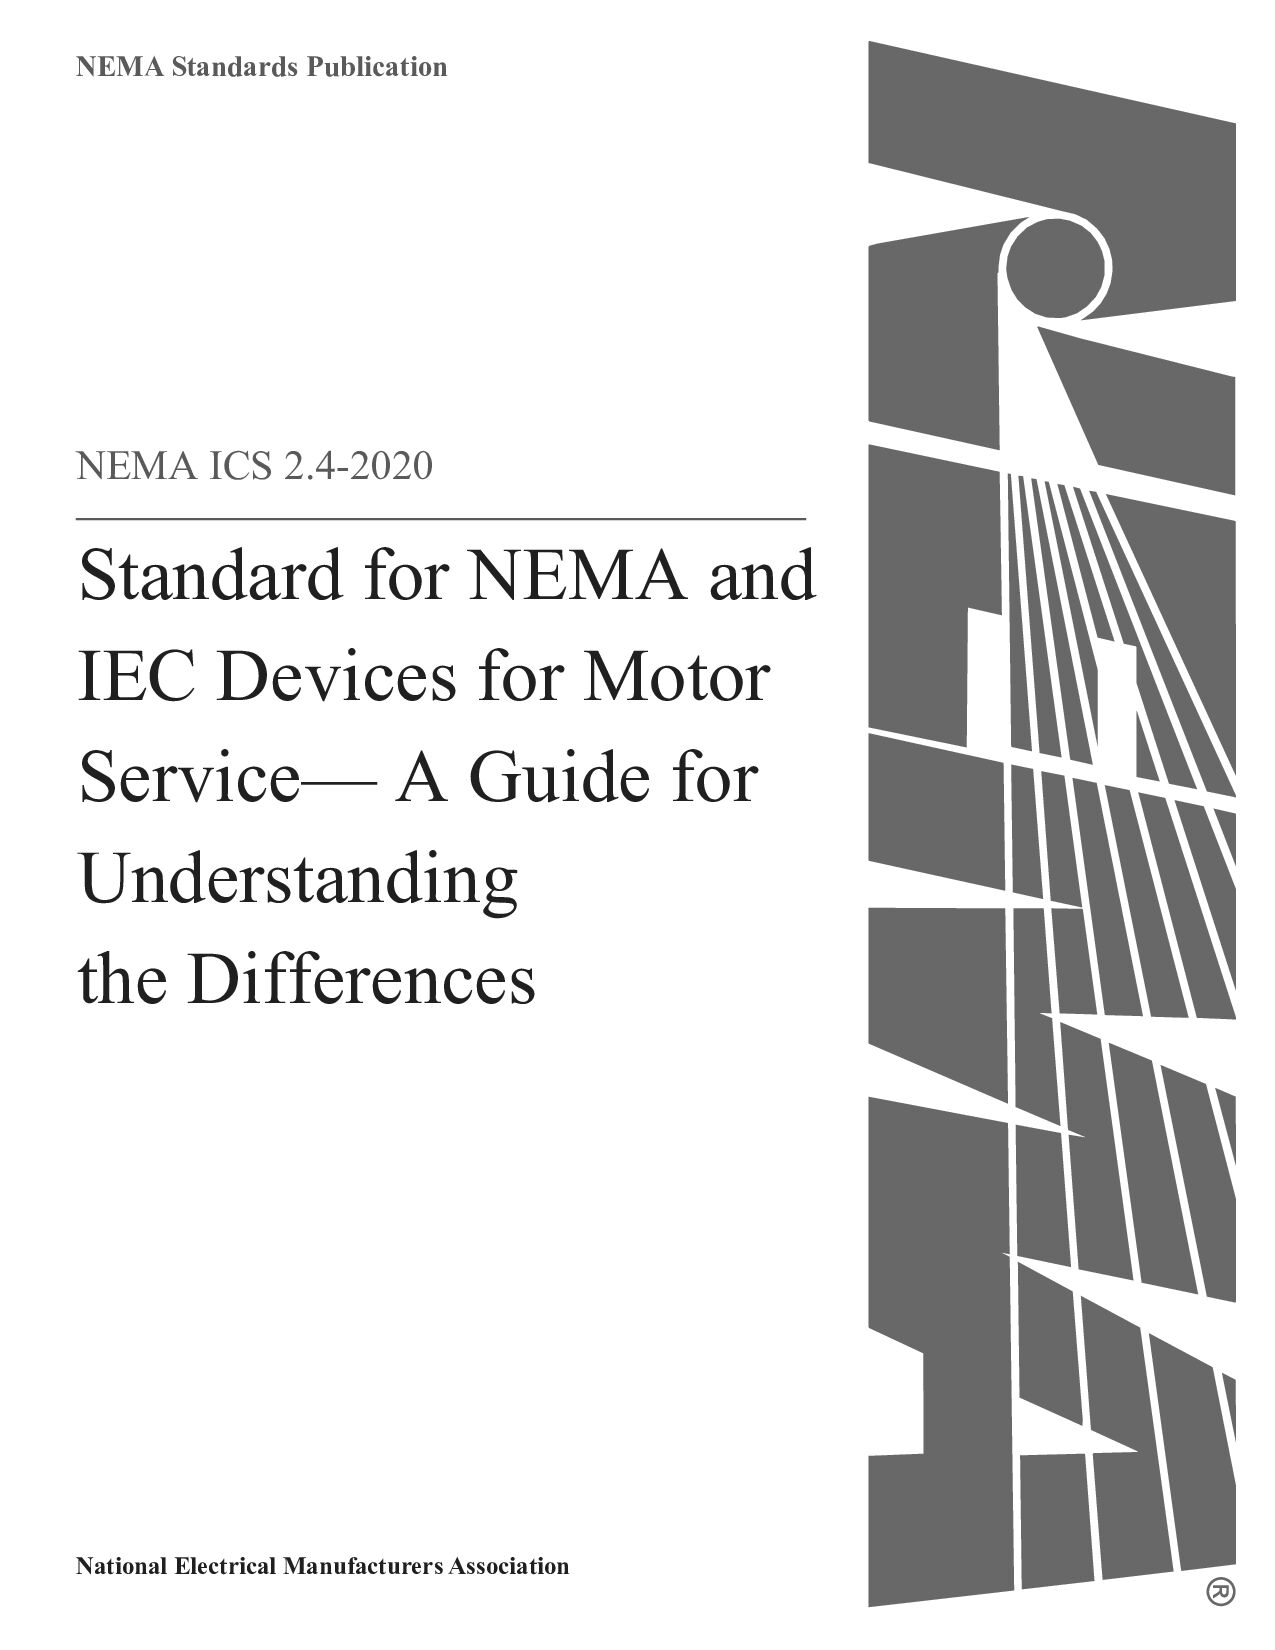 NEMA ICS 2.4-2020